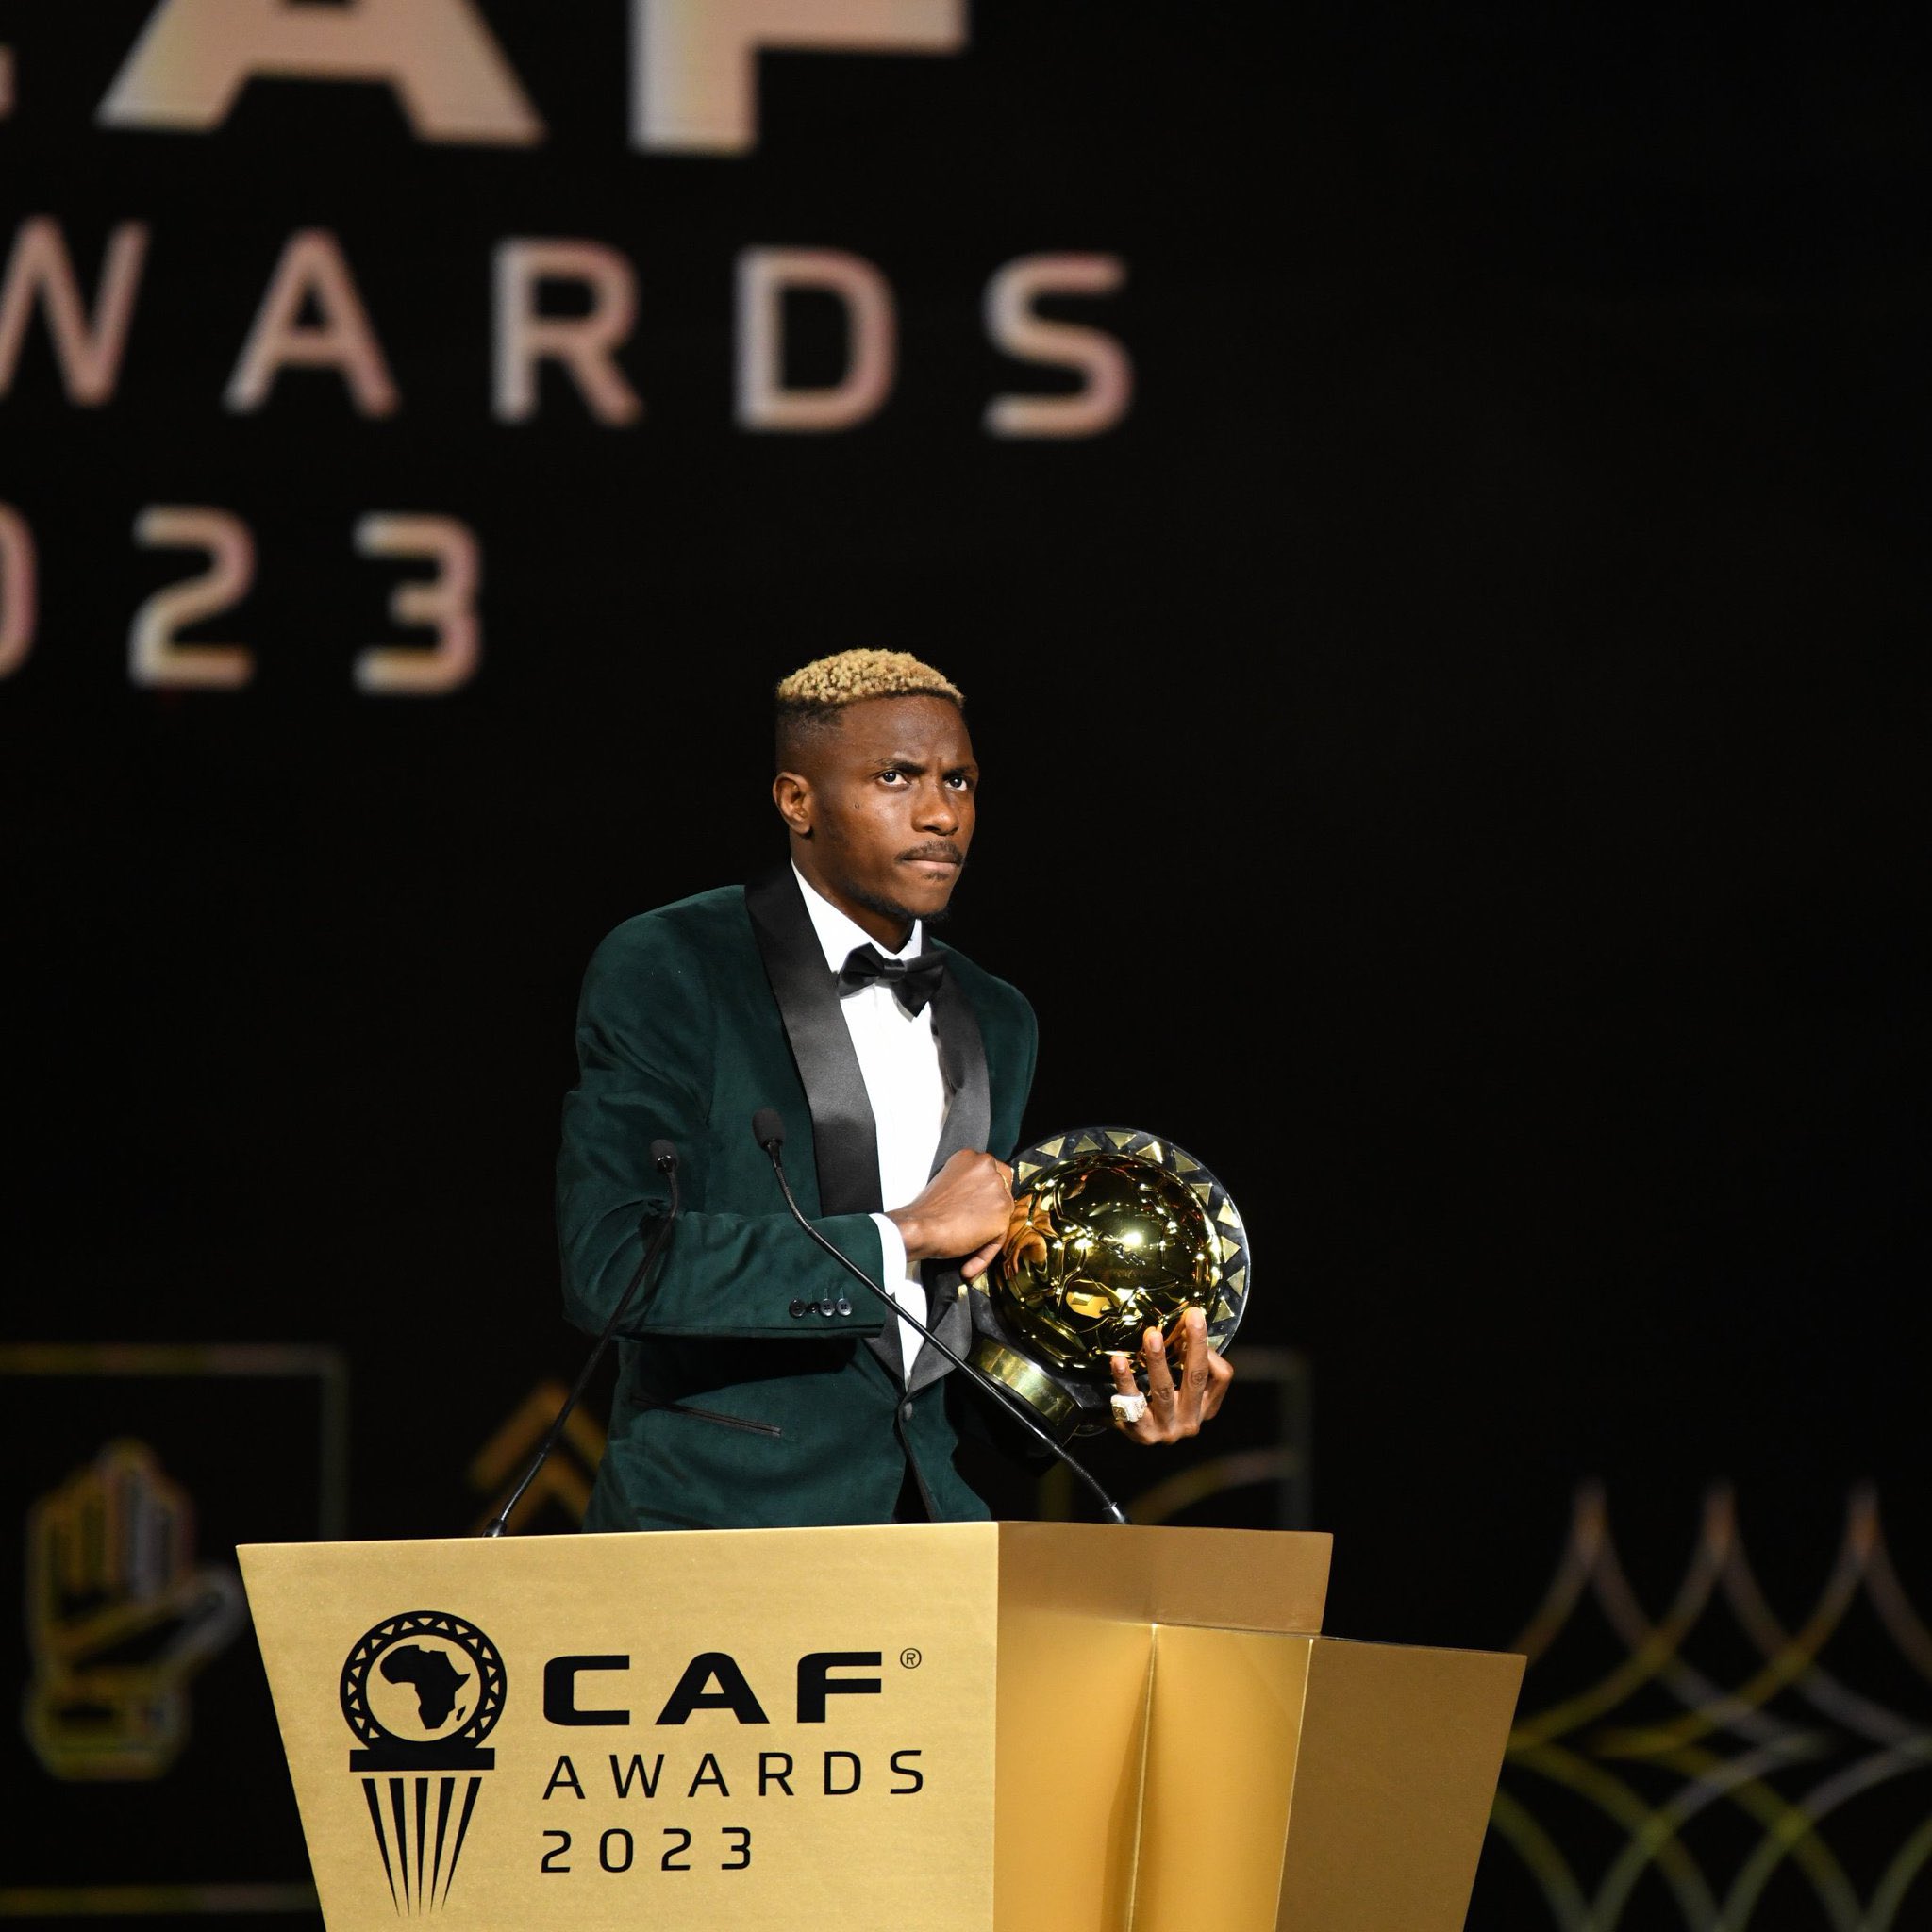 CAF Awards 2023 : Osimhen joueur de l’année, voici tous les lauréats de la soirée !